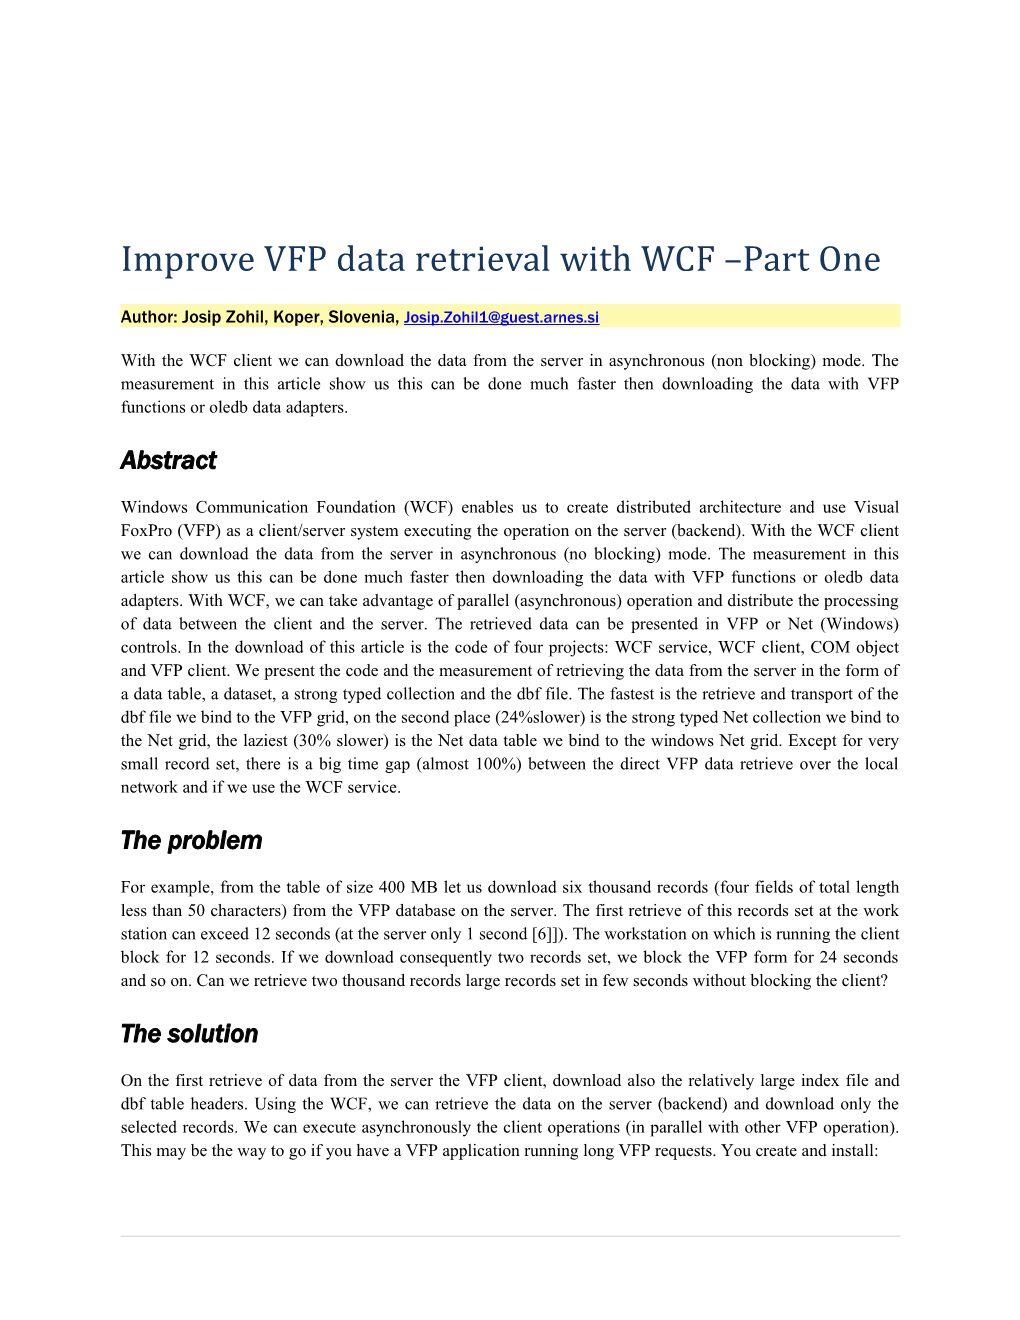 Improve VFP Data Retrieval with WCF